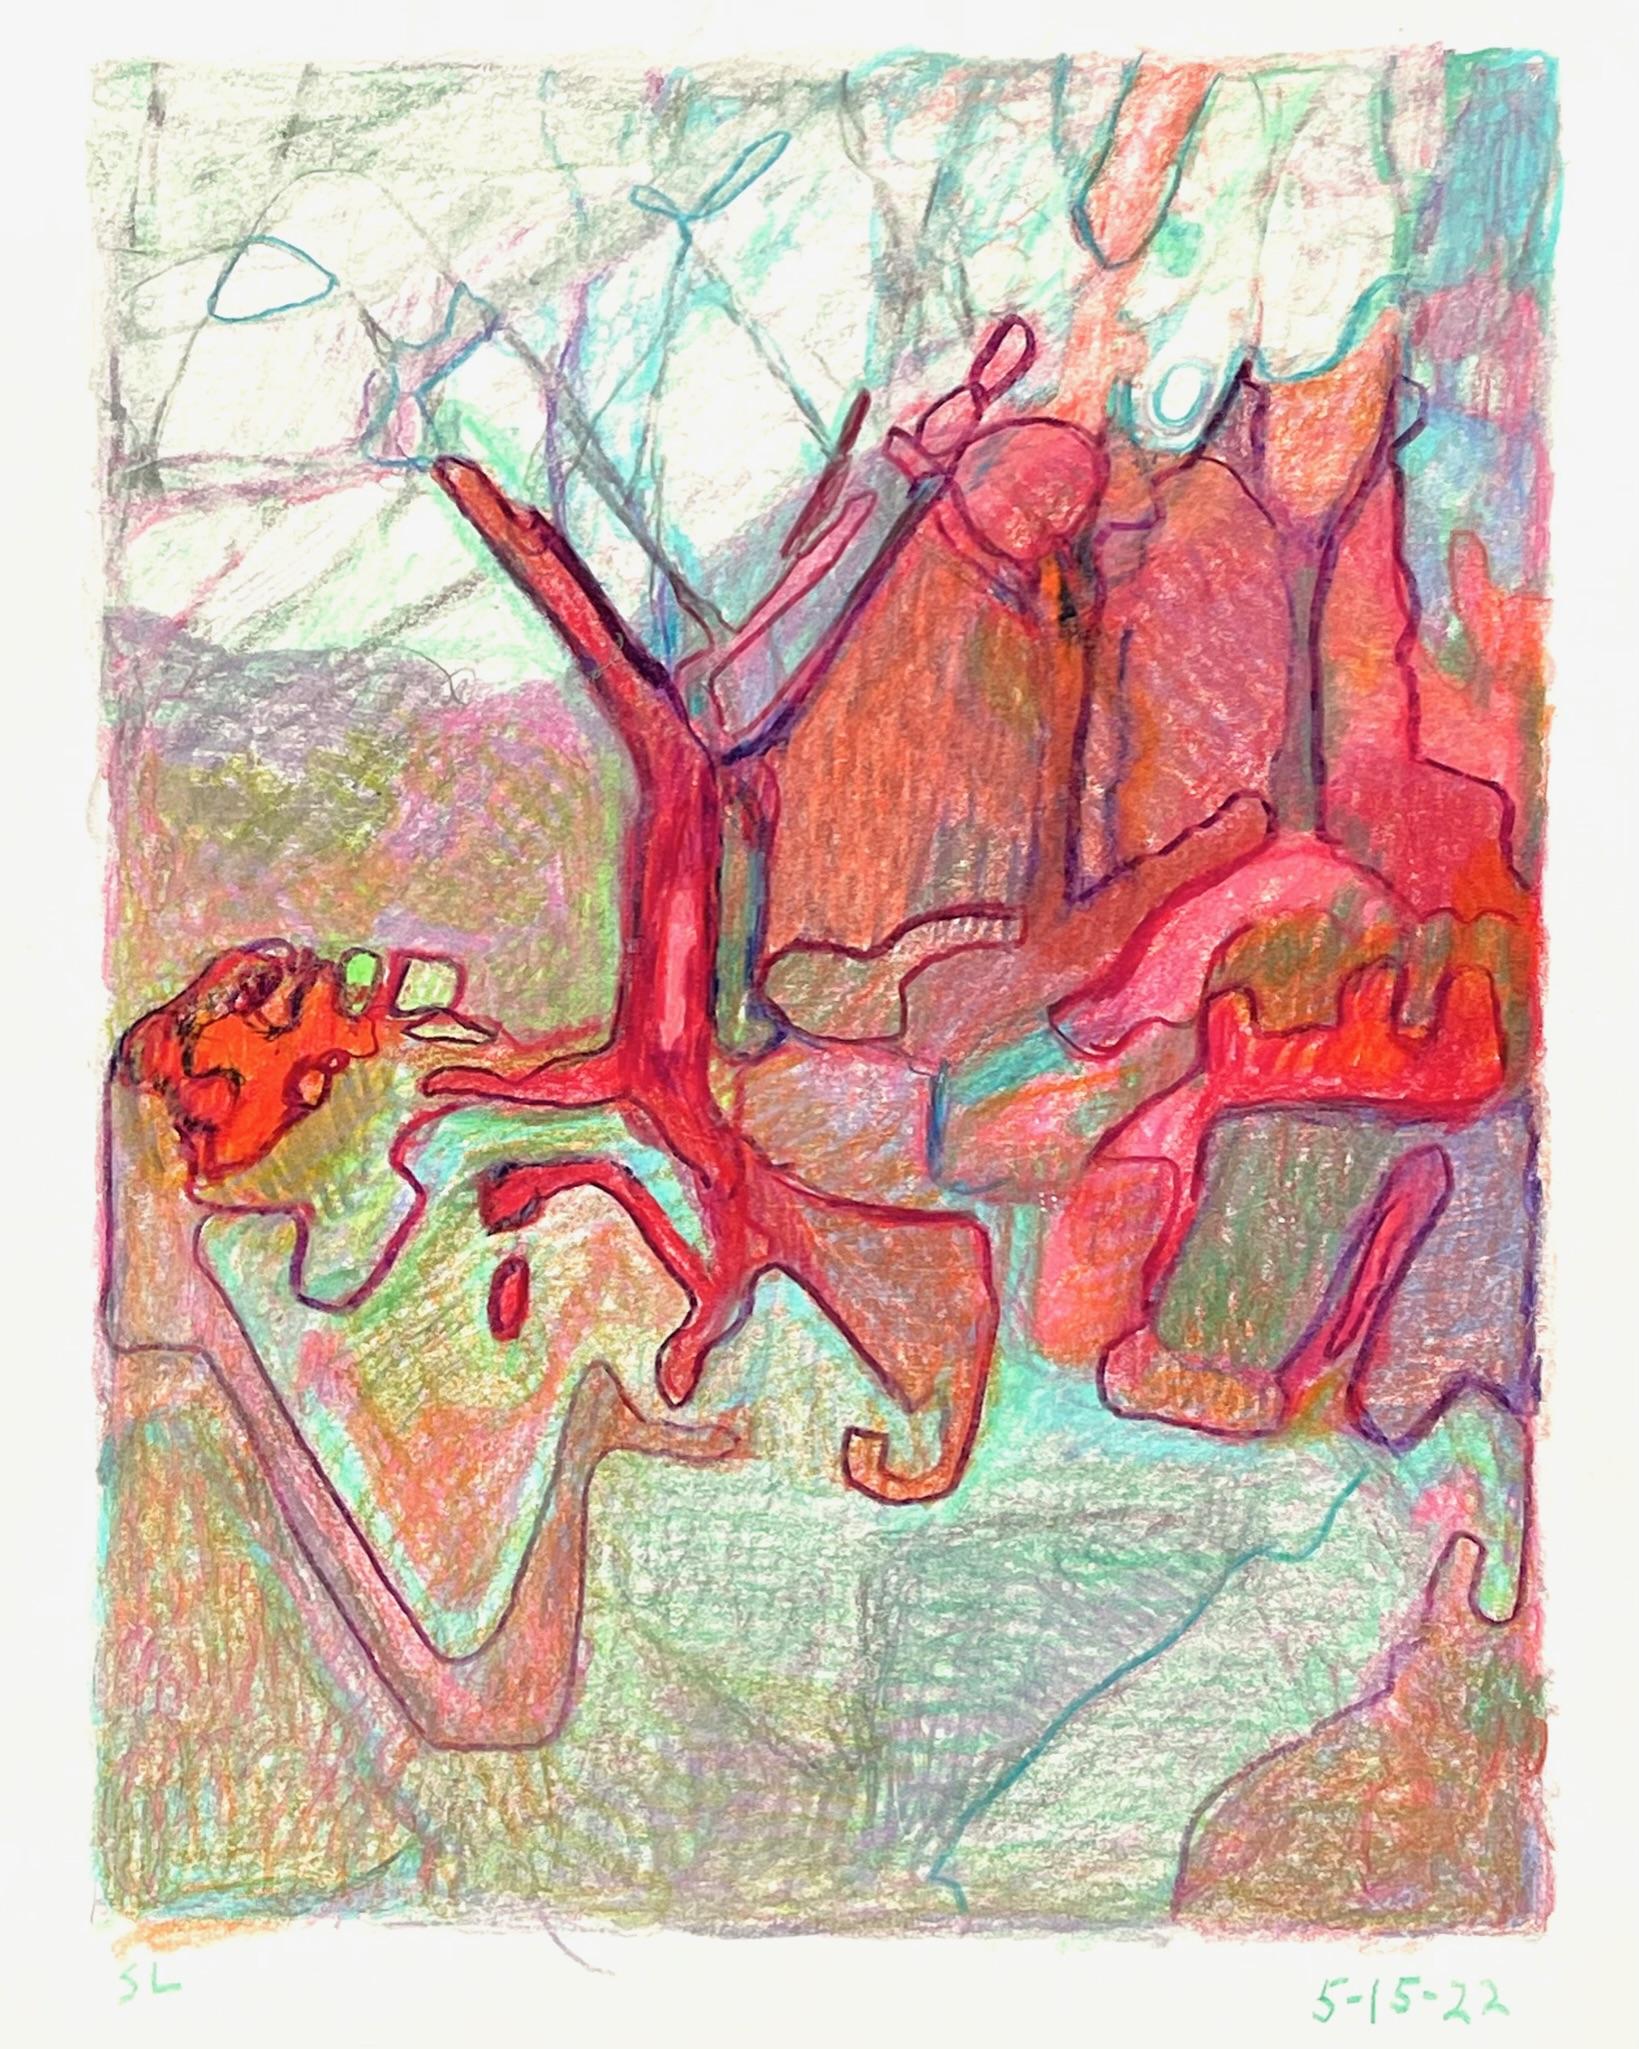 Sandy Litchfield Abstract Drawing – 5-15-22, impressionistische, abstrahierte Landschaftszeichnung mit farbigem Bleistift